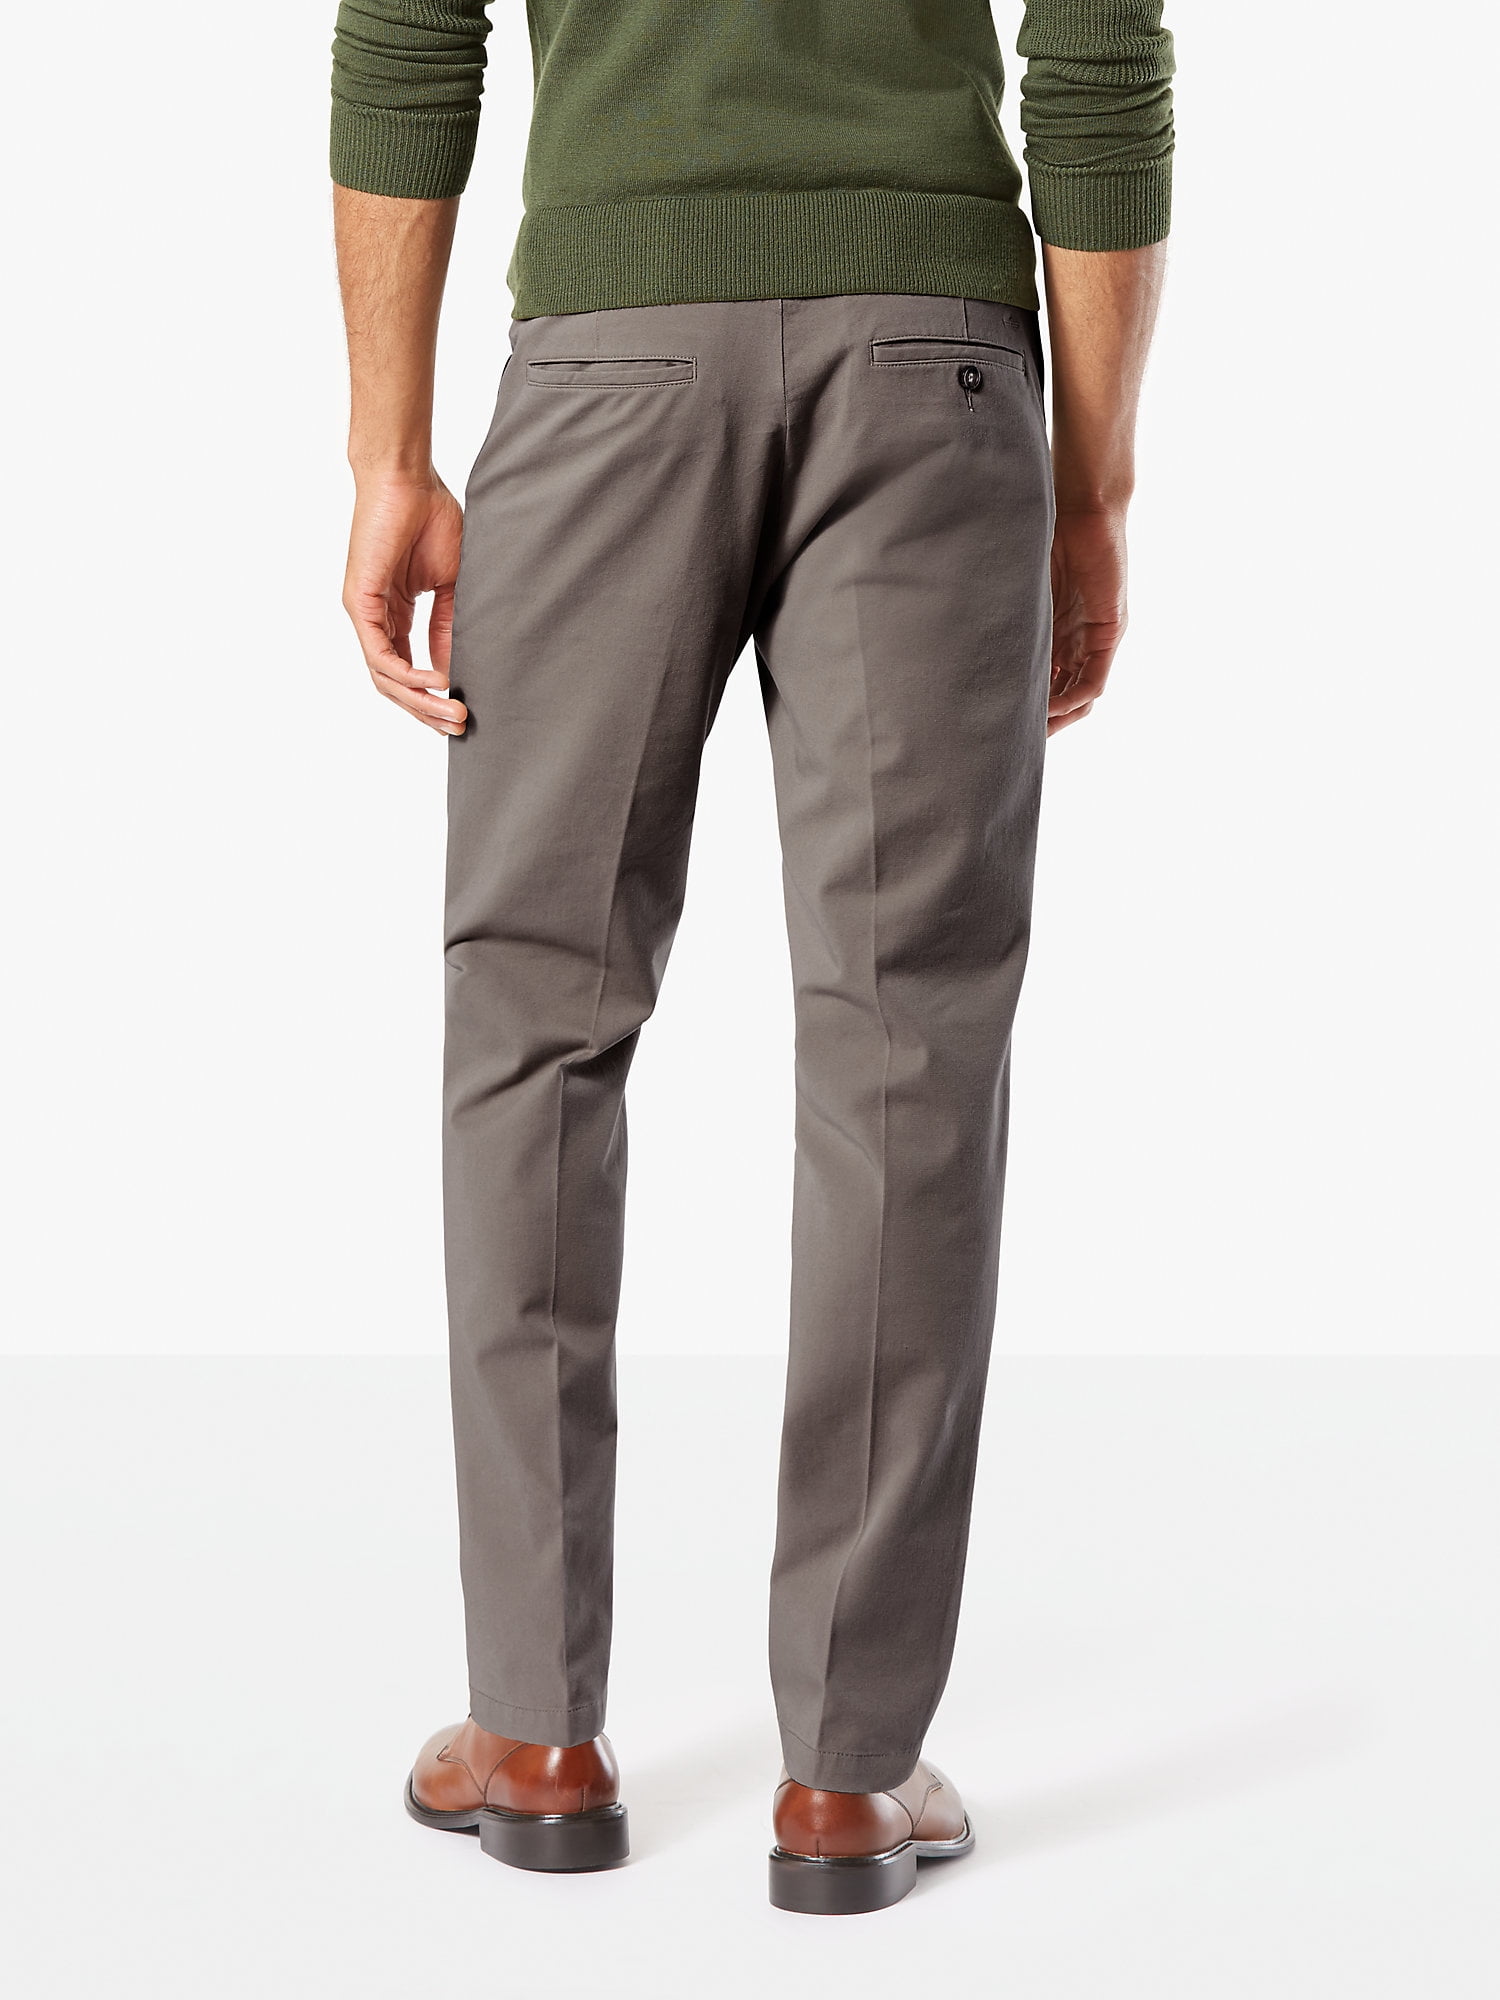 Dockers Men's Slim Fit Khaki Smart 360 Flex Pants D1 - Walmart.com